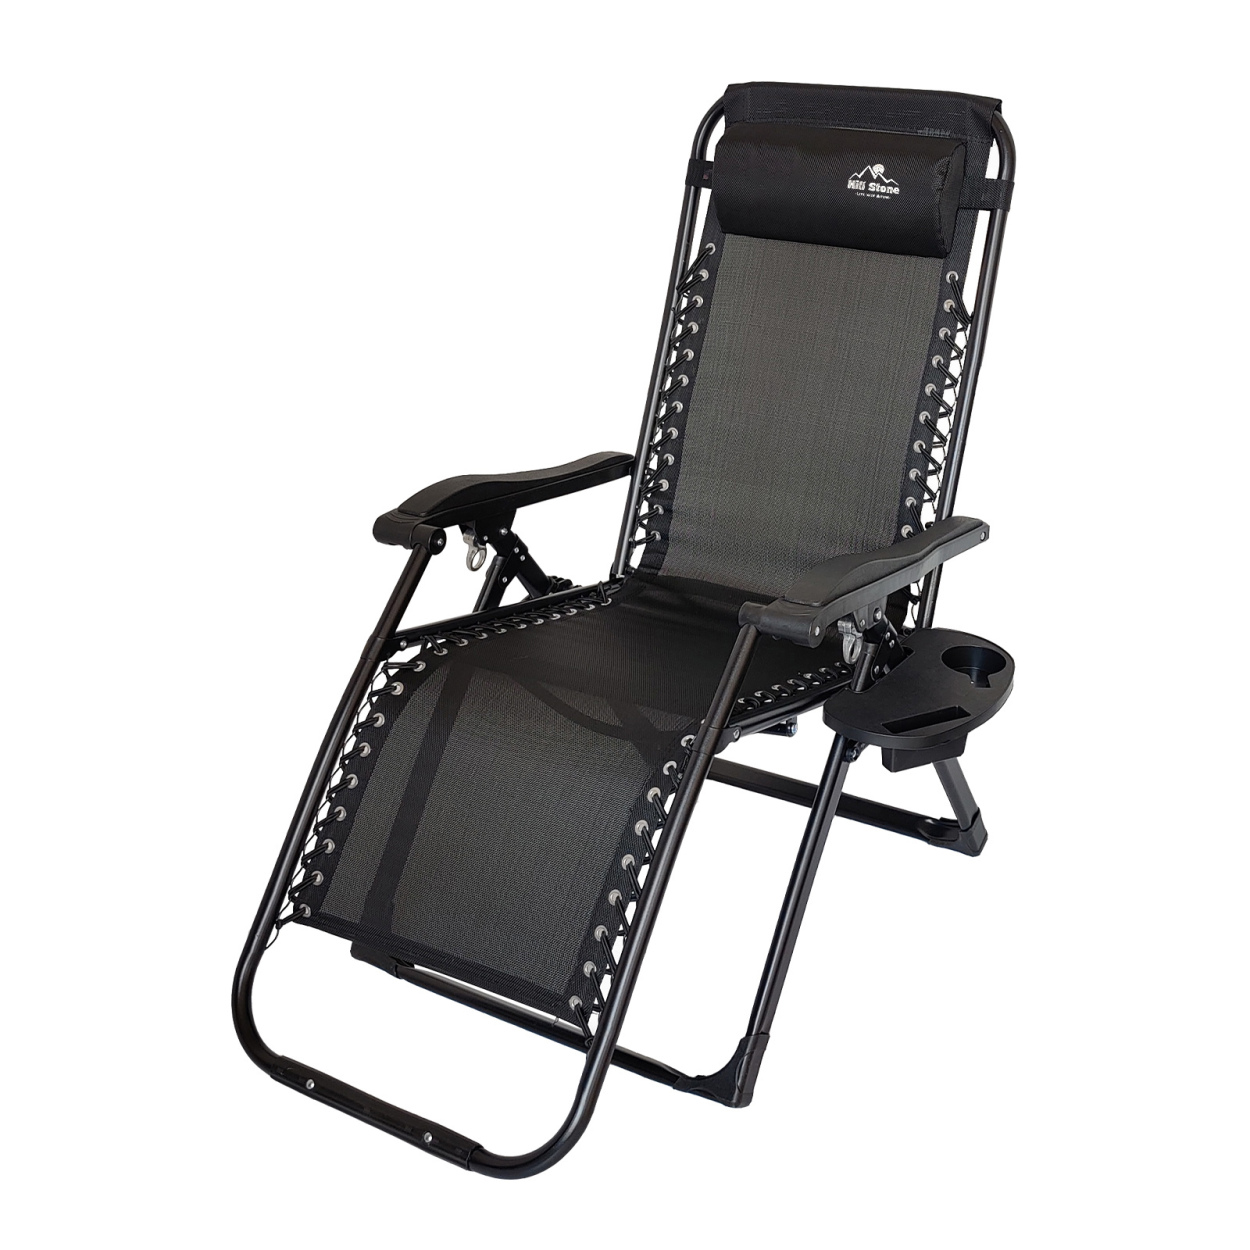 リクライニングチェア 折りたたみ 椅子 一人用 サウナ 外気浴 整い椅子